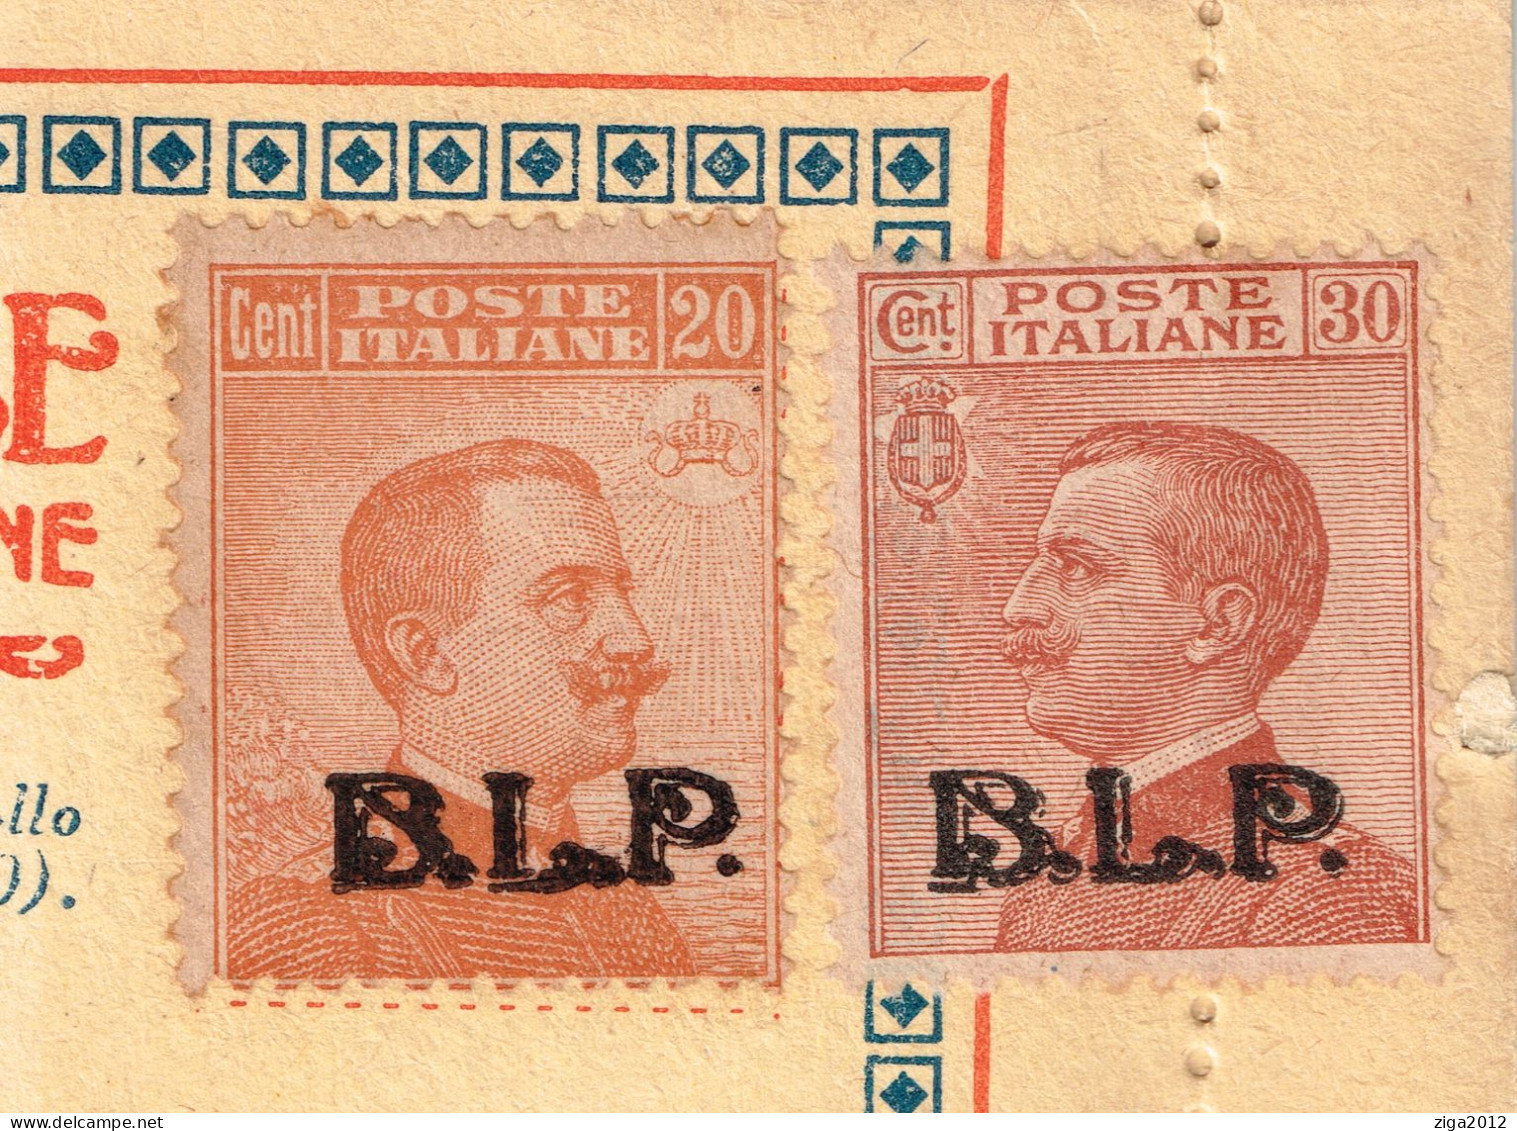 ITALY 1923 B.L.P. BUSTA LETTERA POSTALE CON C.20 III° TIPO + C.30 III° TIPO NUOVA E COMPLETA - Publicité